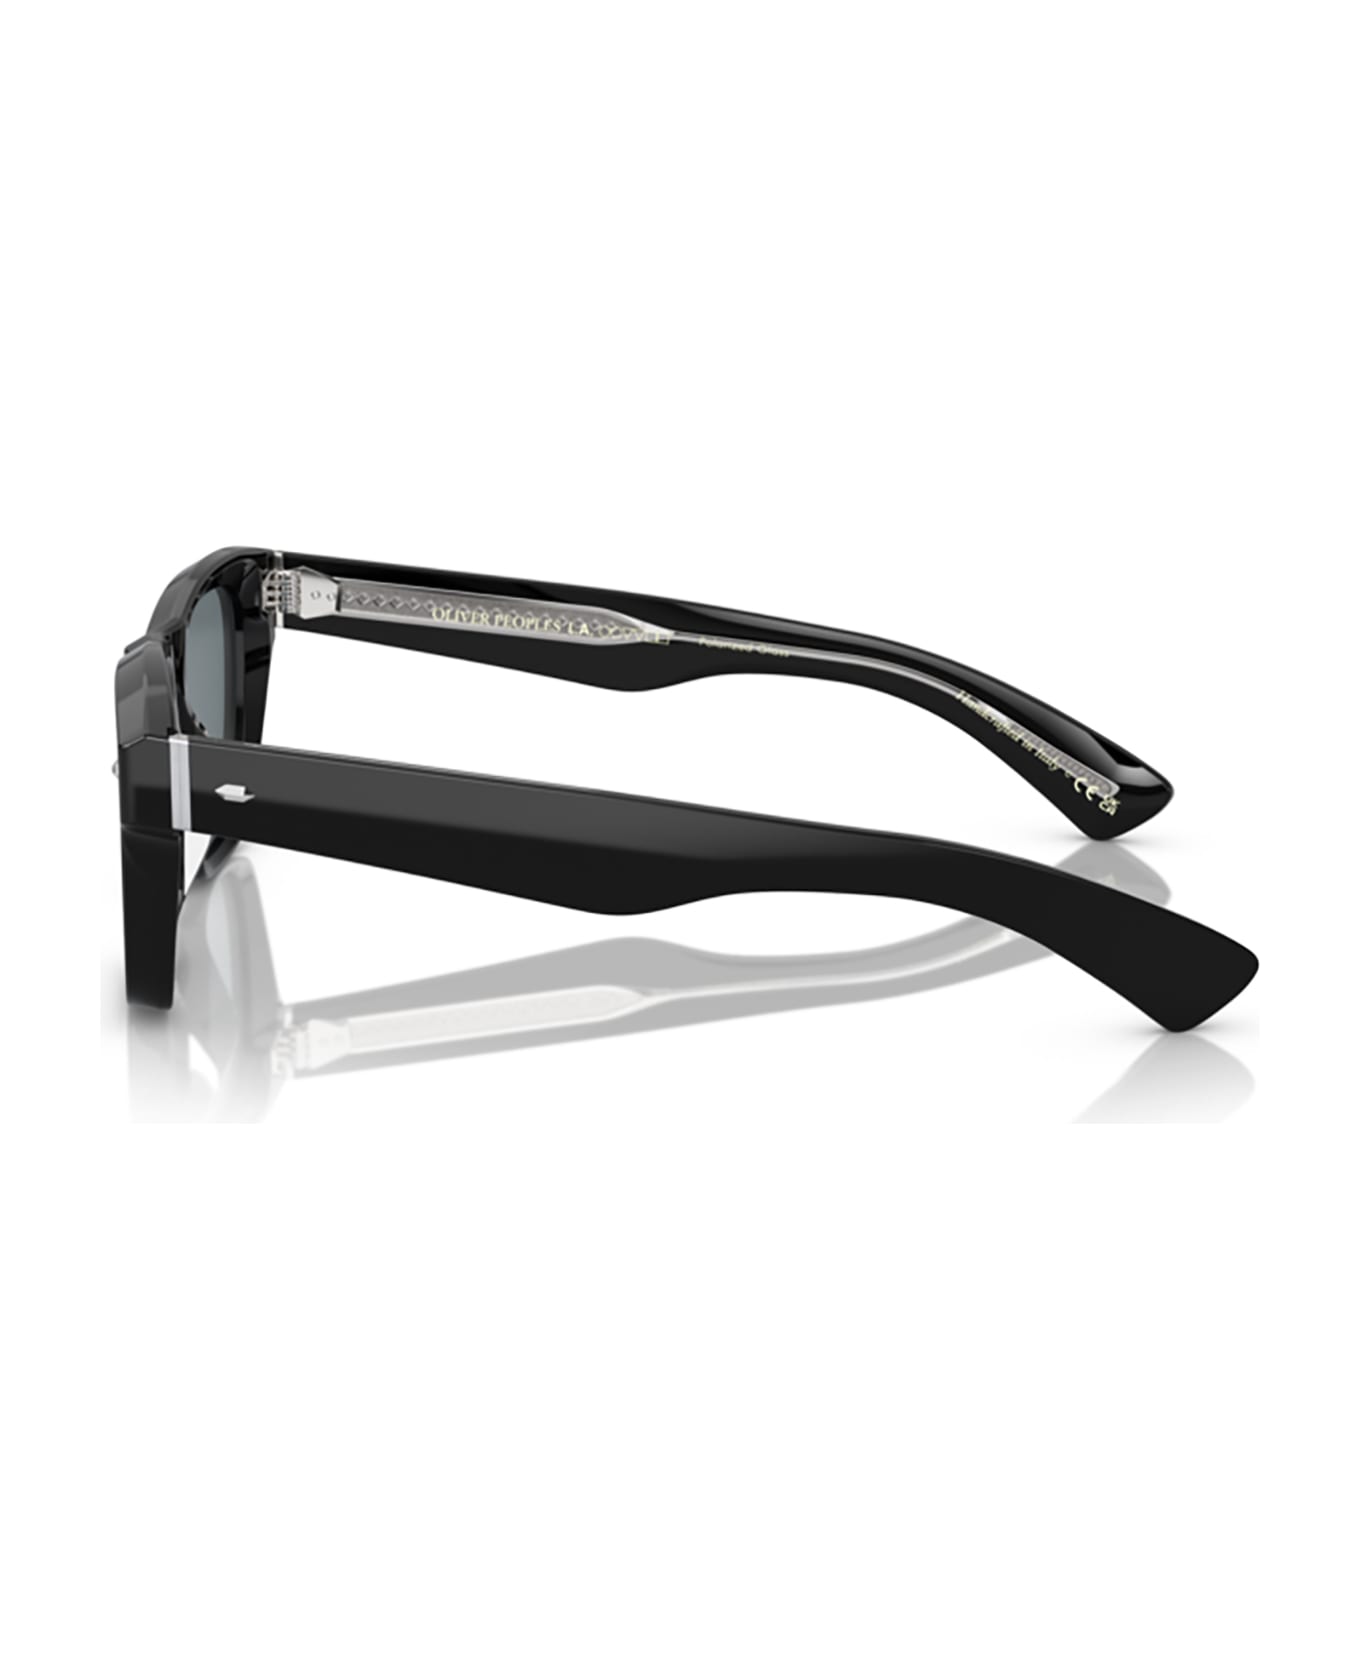 Oliver Peoples Ov5522su Black Sunglasses - Black